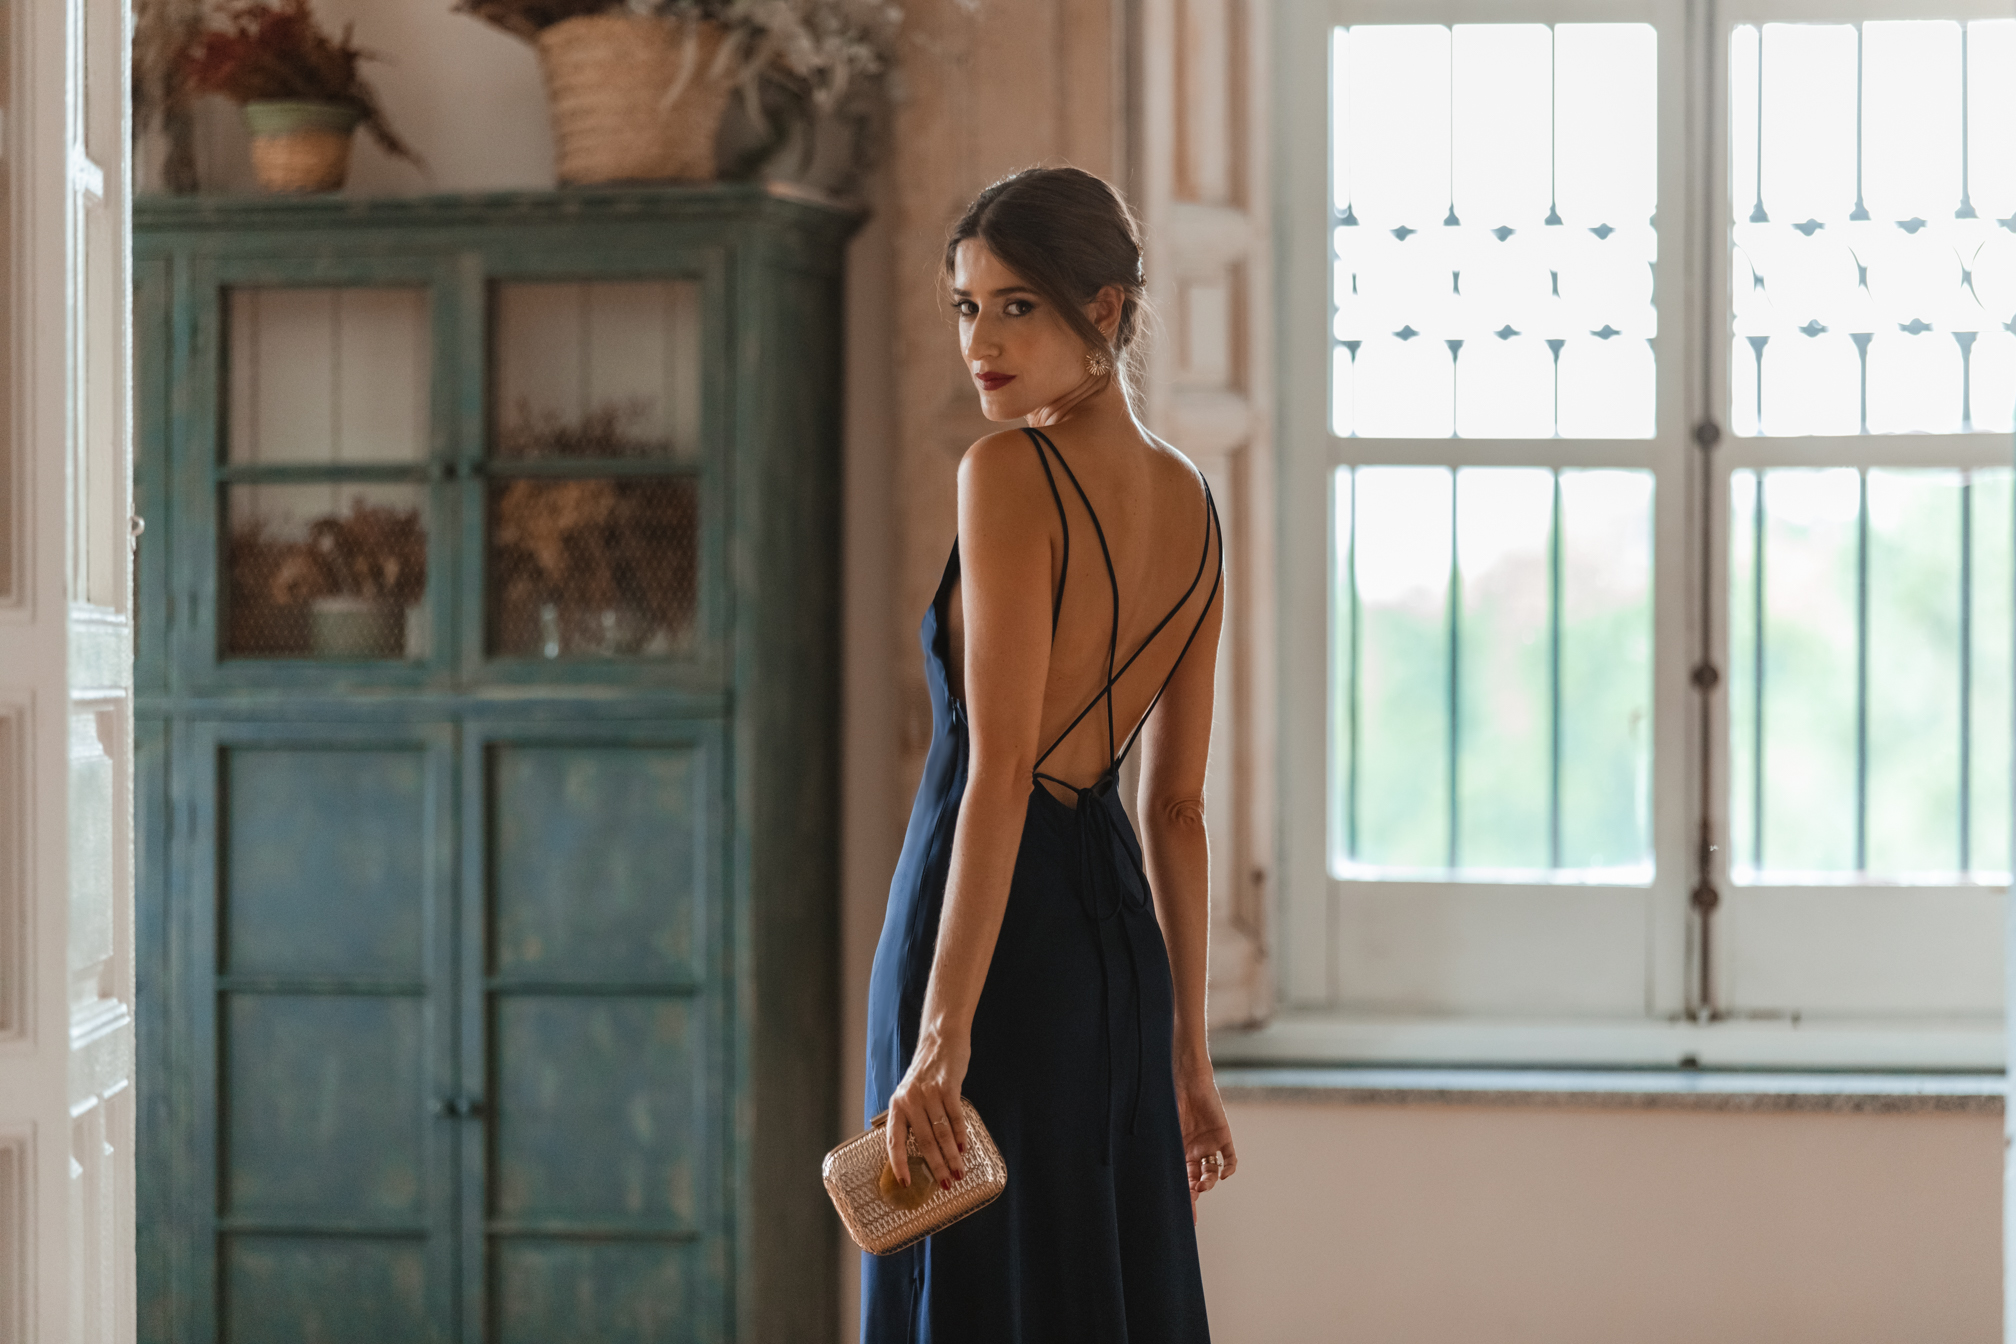 Look de invitada de tarde: el vestido azul noche con espalda